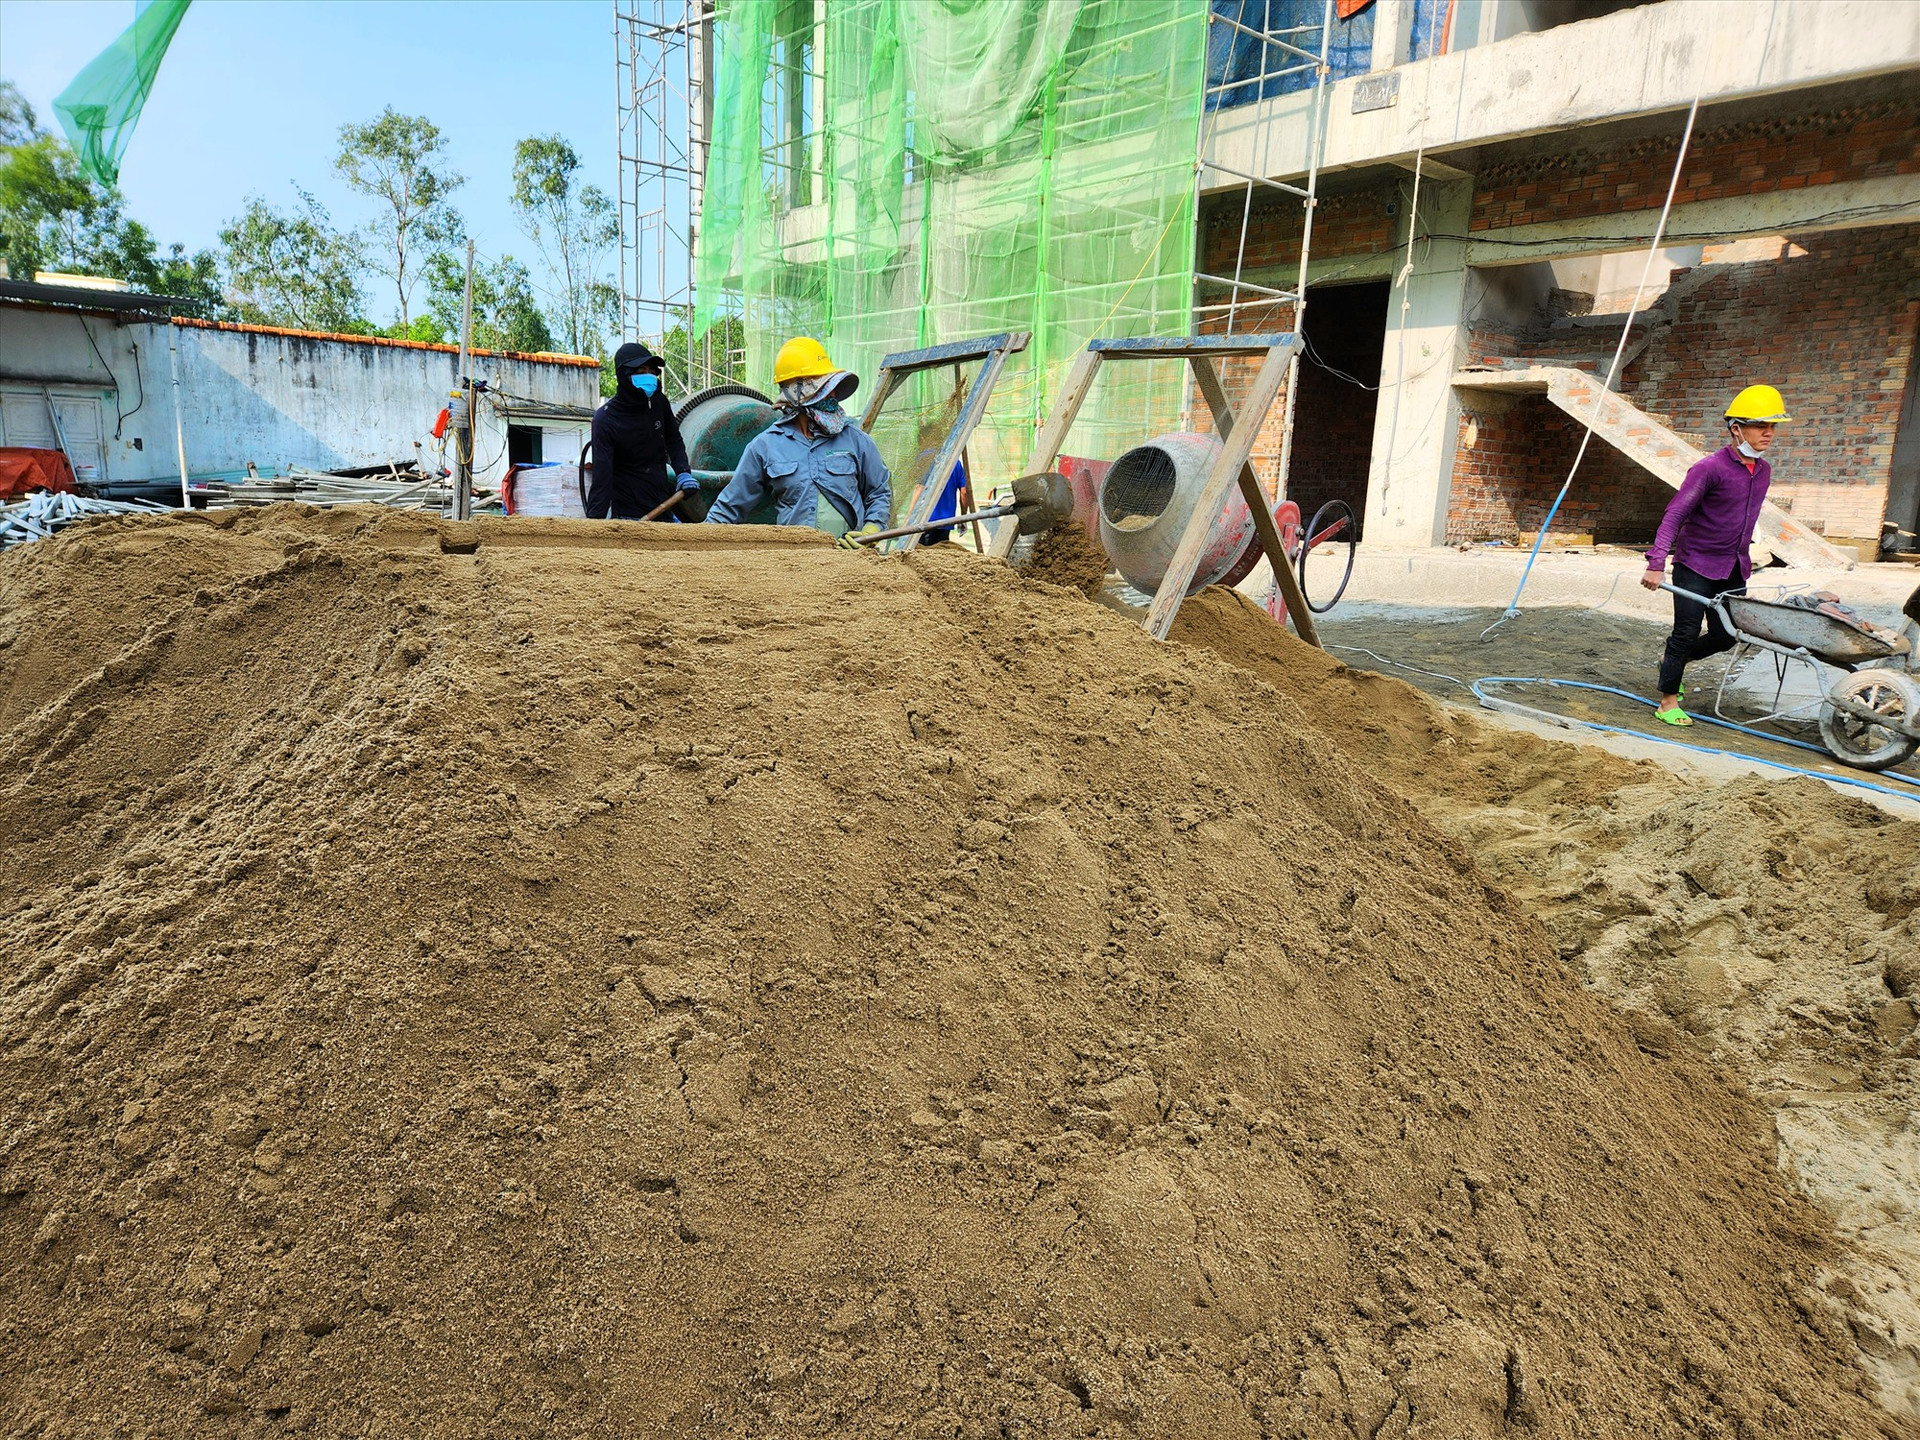 Giá cát xây dựng mua vào thời điểm giữa tuần qua đã cao gần gấp đôi so với trước Tết Nguyên đán nhưng nhiều dự án đành chấp nhận để duy trì thi công. Ảnh: Q.C.